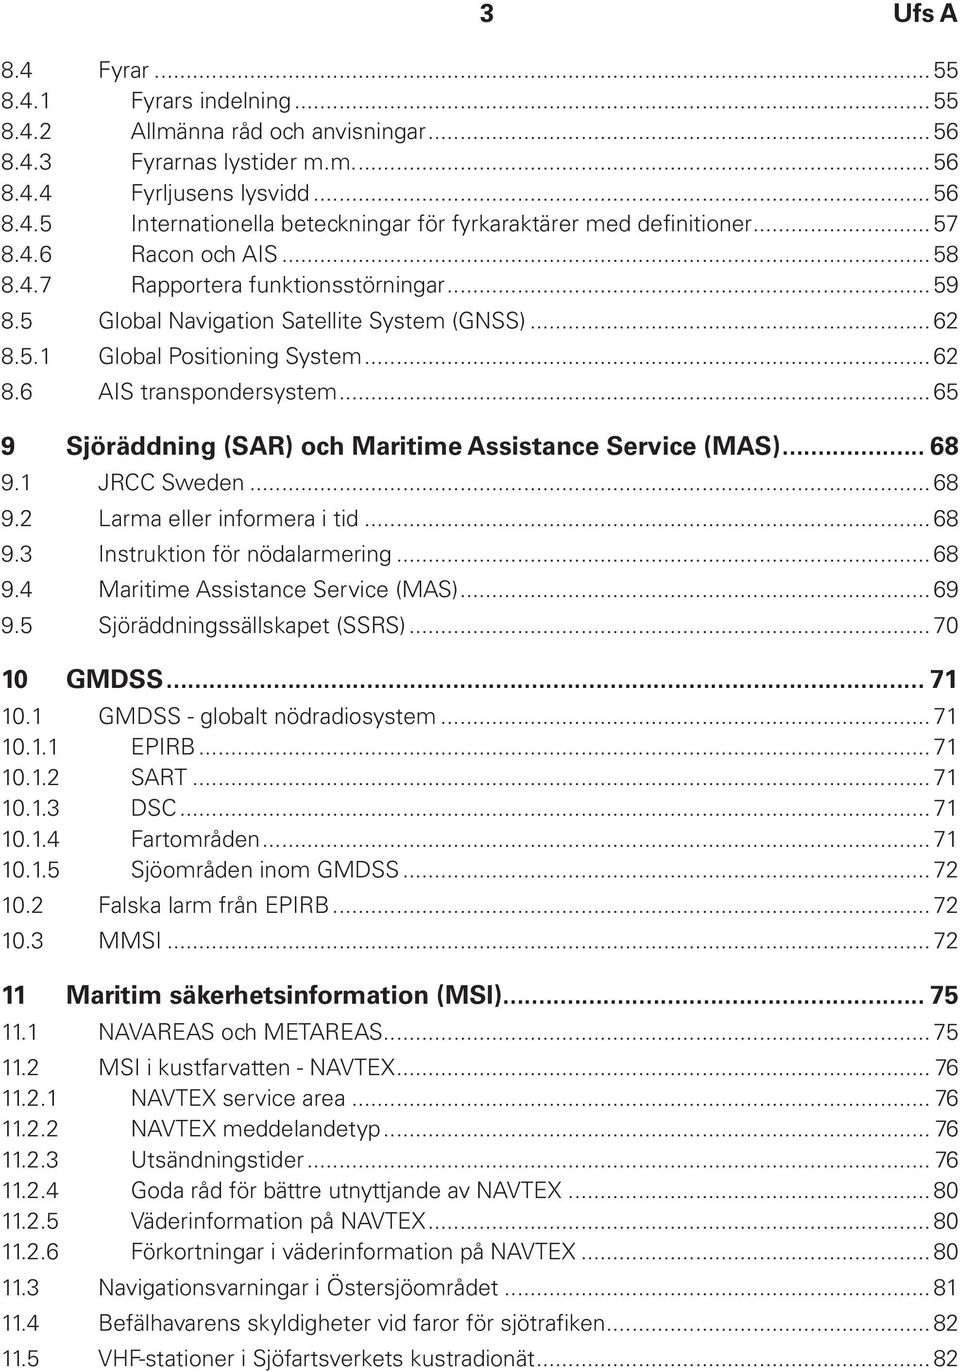 ..65 9 Sjöräddning (SAR) och Maritime Assistance Service (MAS)... 68 9.1 JRCC Sweden...68 9.2 Larma eller informera i tid...68 9.3 Instruktion för nödalarmering...68 9.4 Maritime Assistance Service (MAS).